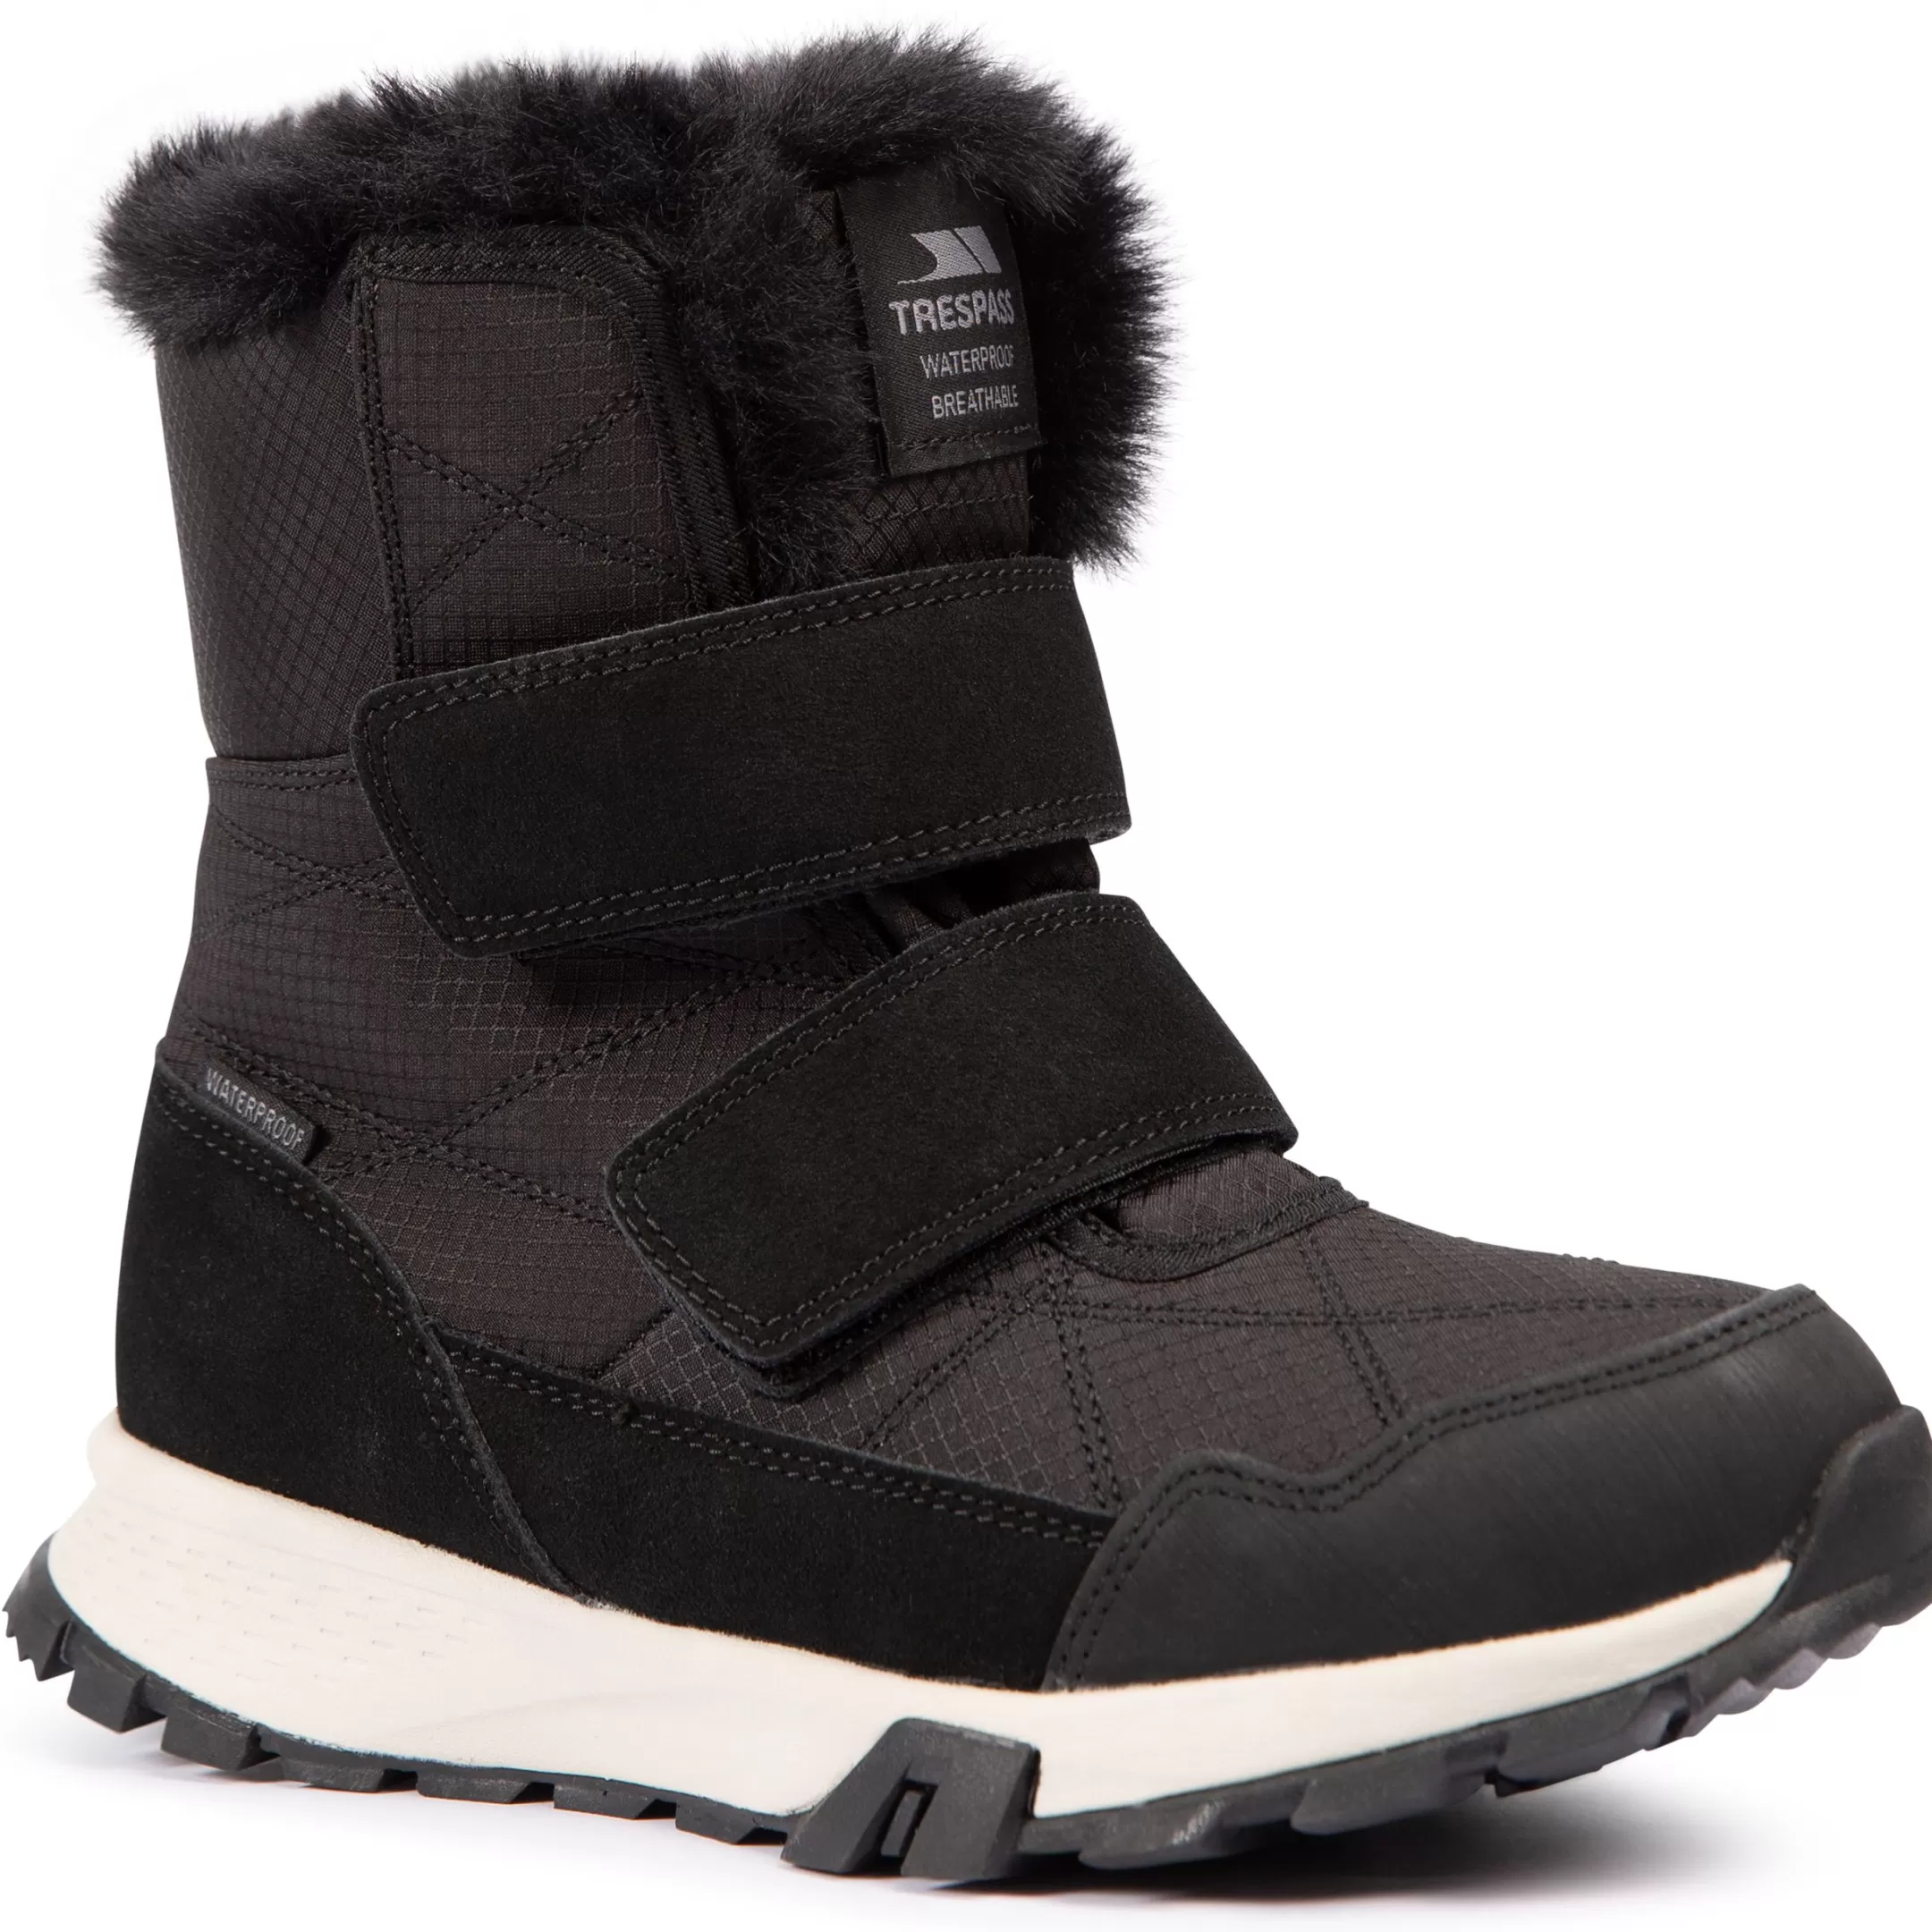 Women's Snow Boots Eira | Trespass Fashion